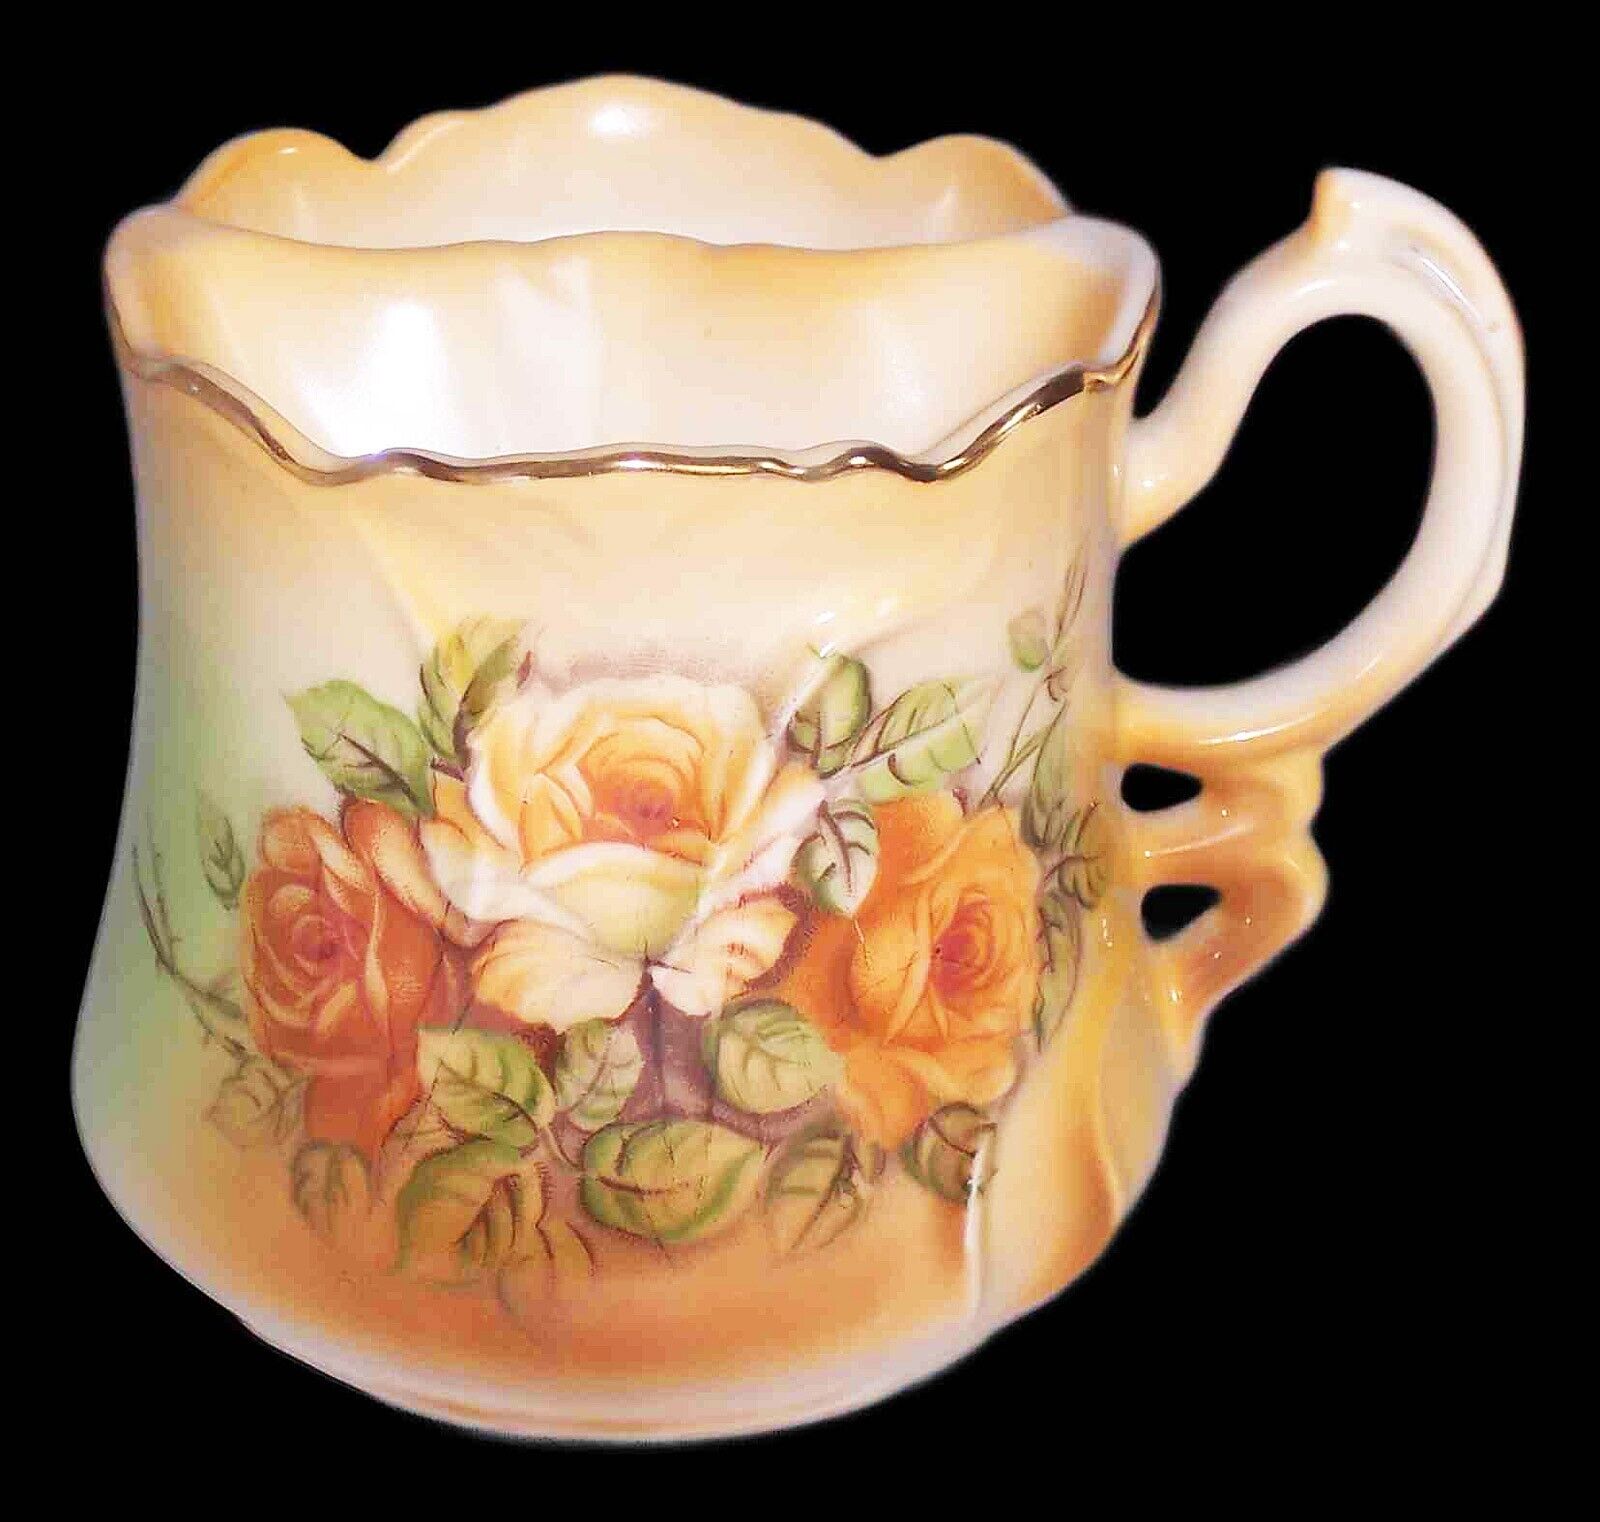 Vintage Shaving Mug – Beautiful Golden Roses Bouquet Design - Brandenburg